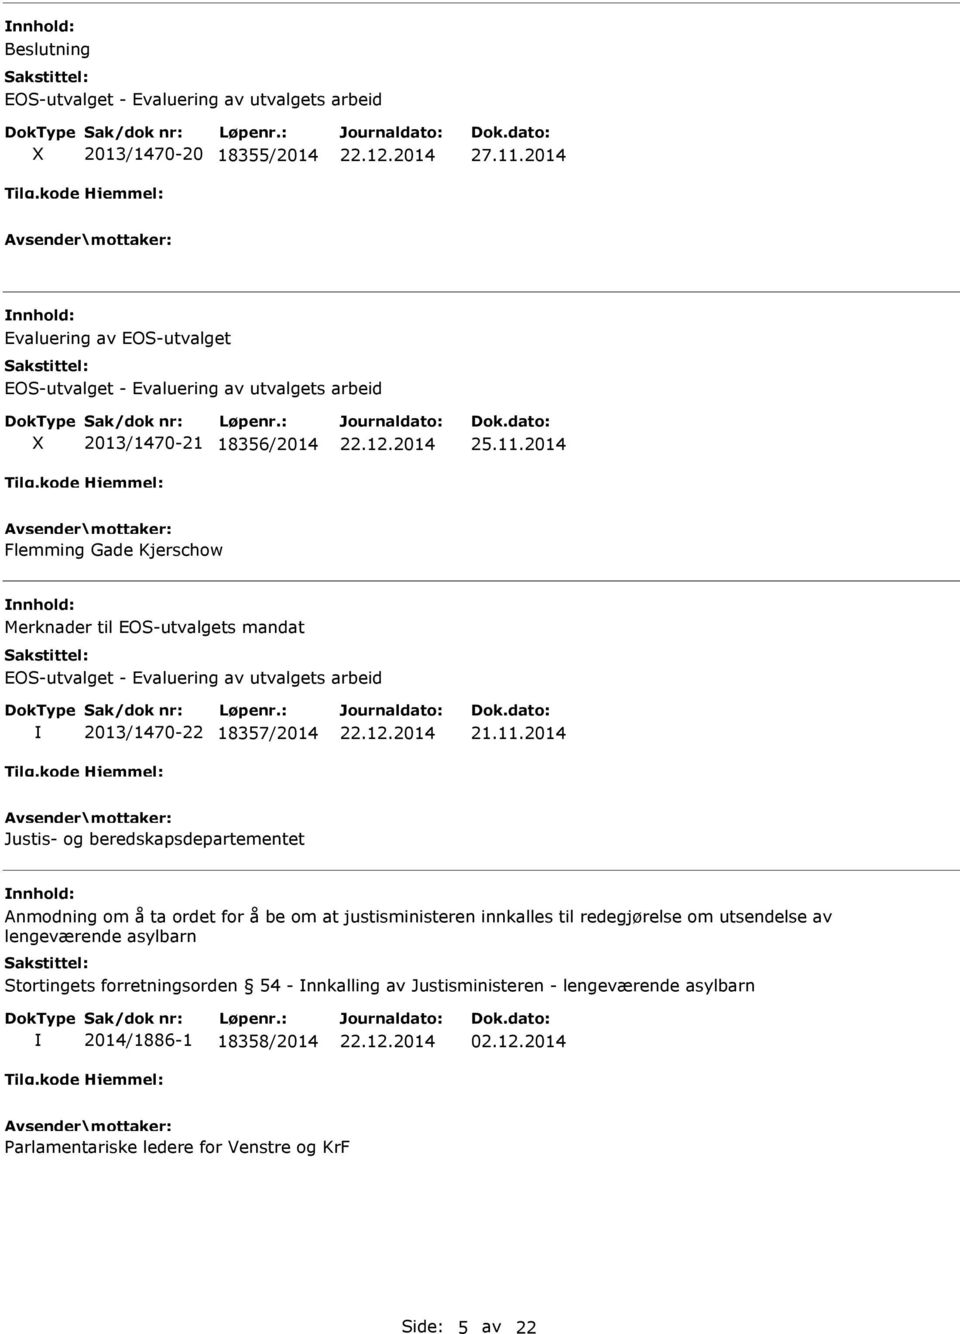 2014 Flemming Gade Kjerschow Merknader til EOS-utvalgets mandat EOS-utvalget - Evaluering av utvalgets arbeid 2013/1470-22 18357/2014 21.11.